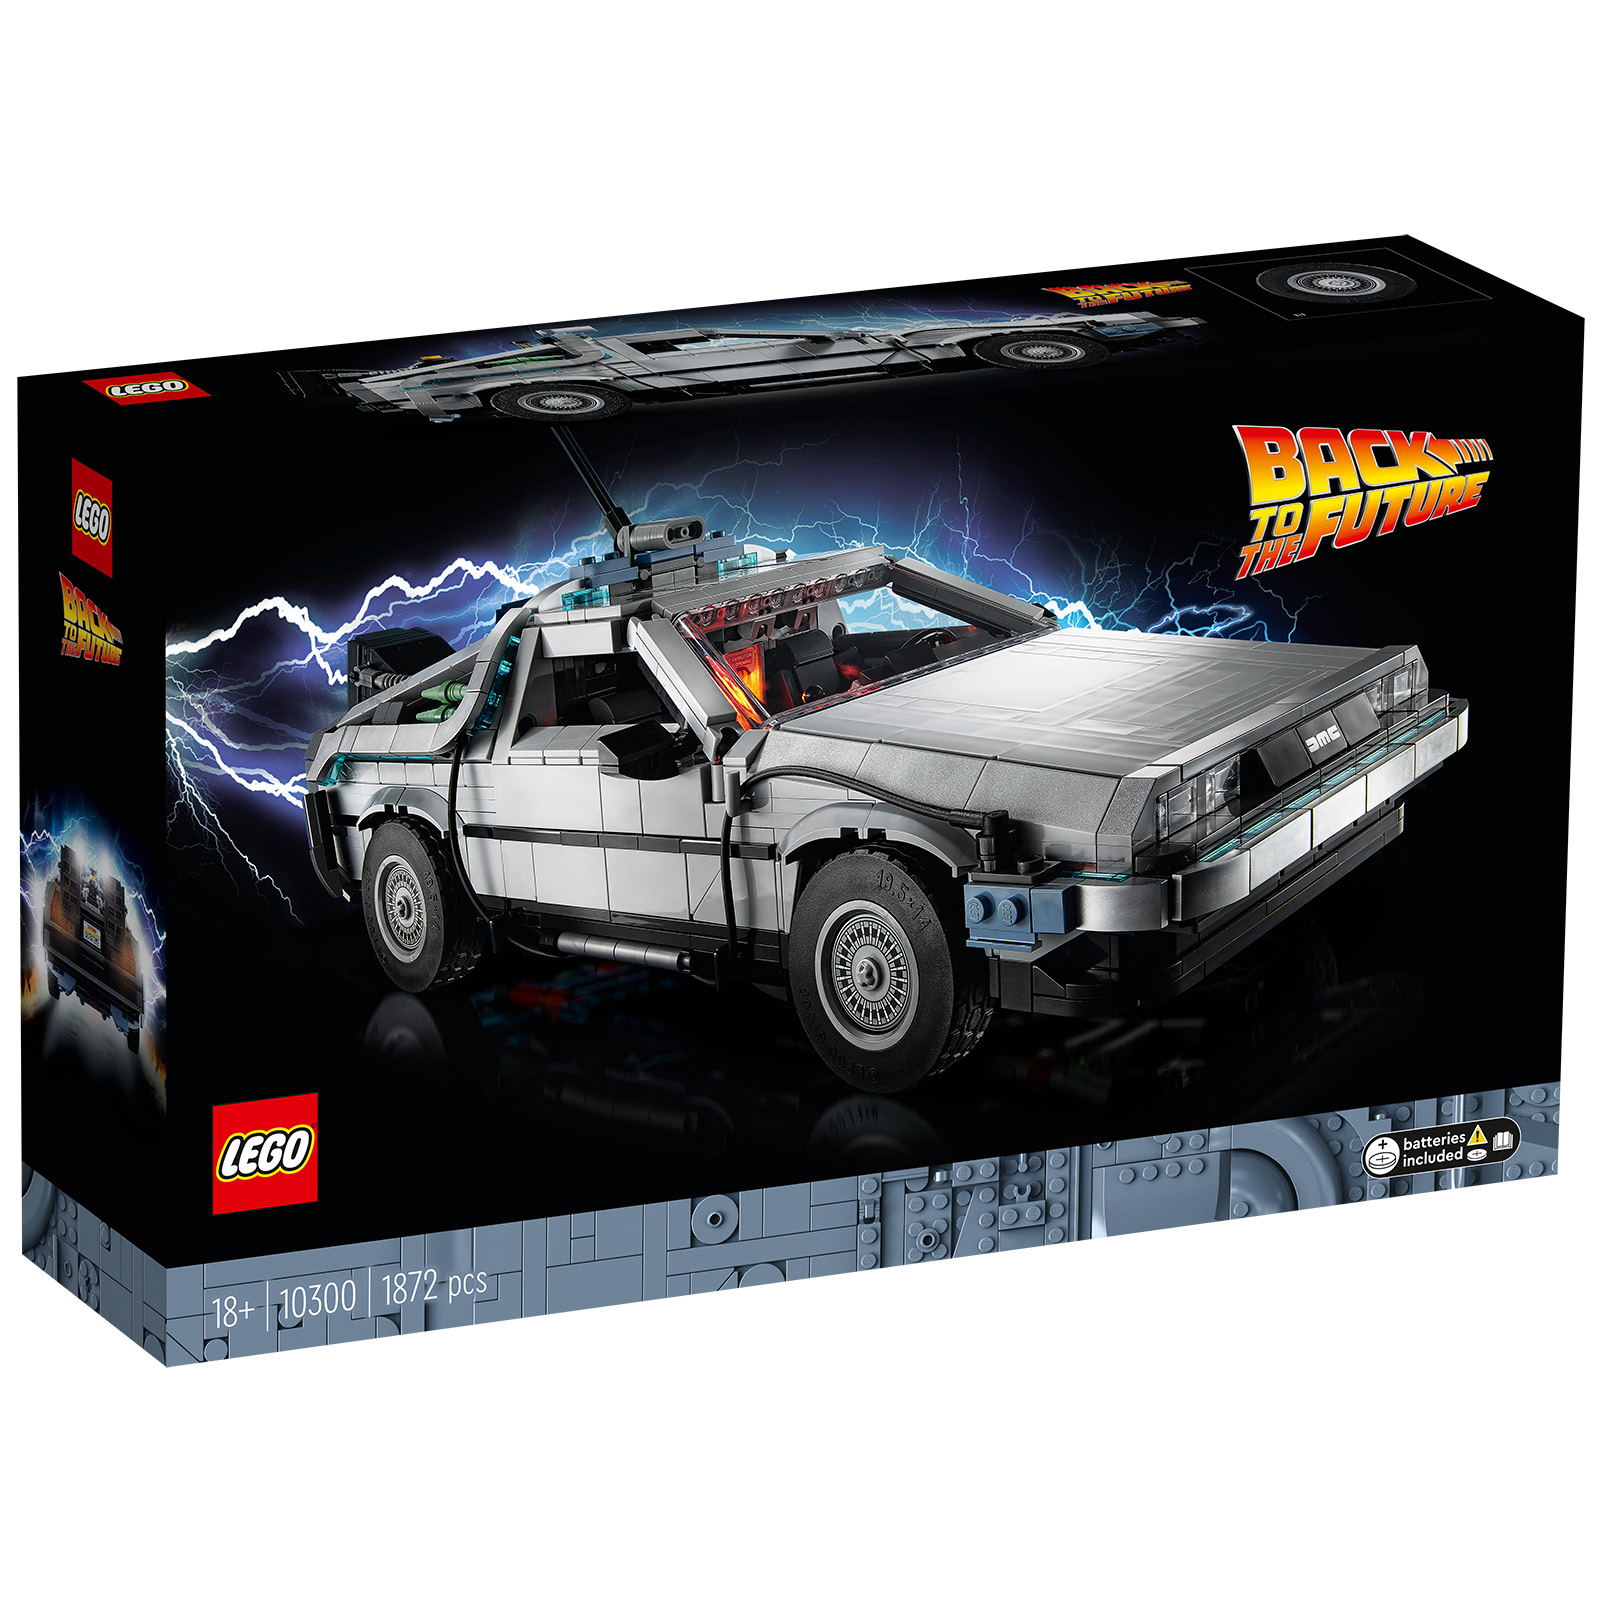 LEGO 10300 Înapoi în viitor Mașina timpului: în prezent reaprovizionat în Magazin